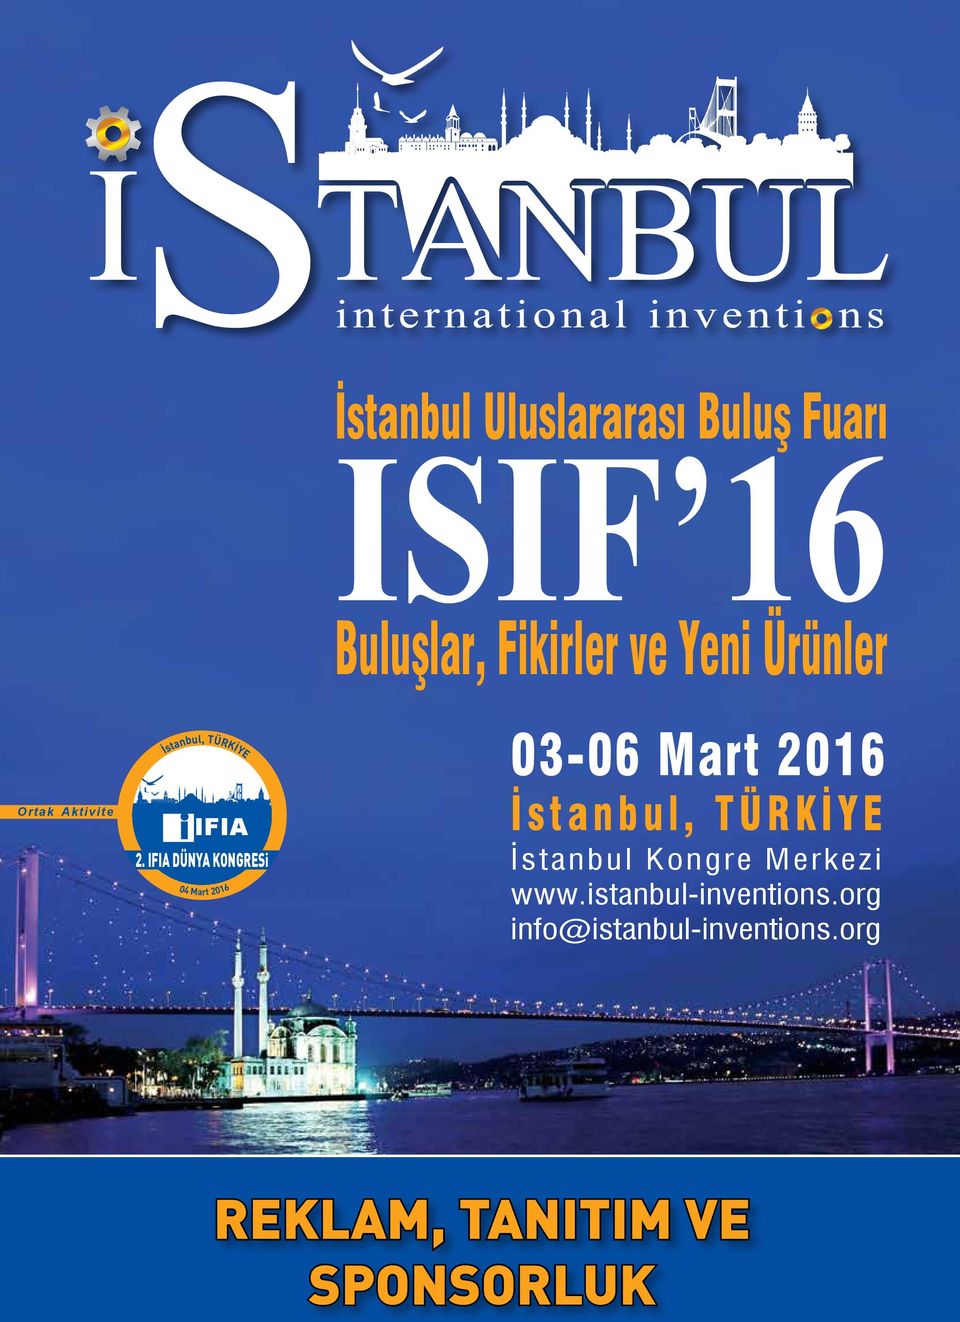 IFIA DÜNYA KONGRESi 04 Mart 2016 03-06 Mart 2016 İstanbul, TÜRKİYE